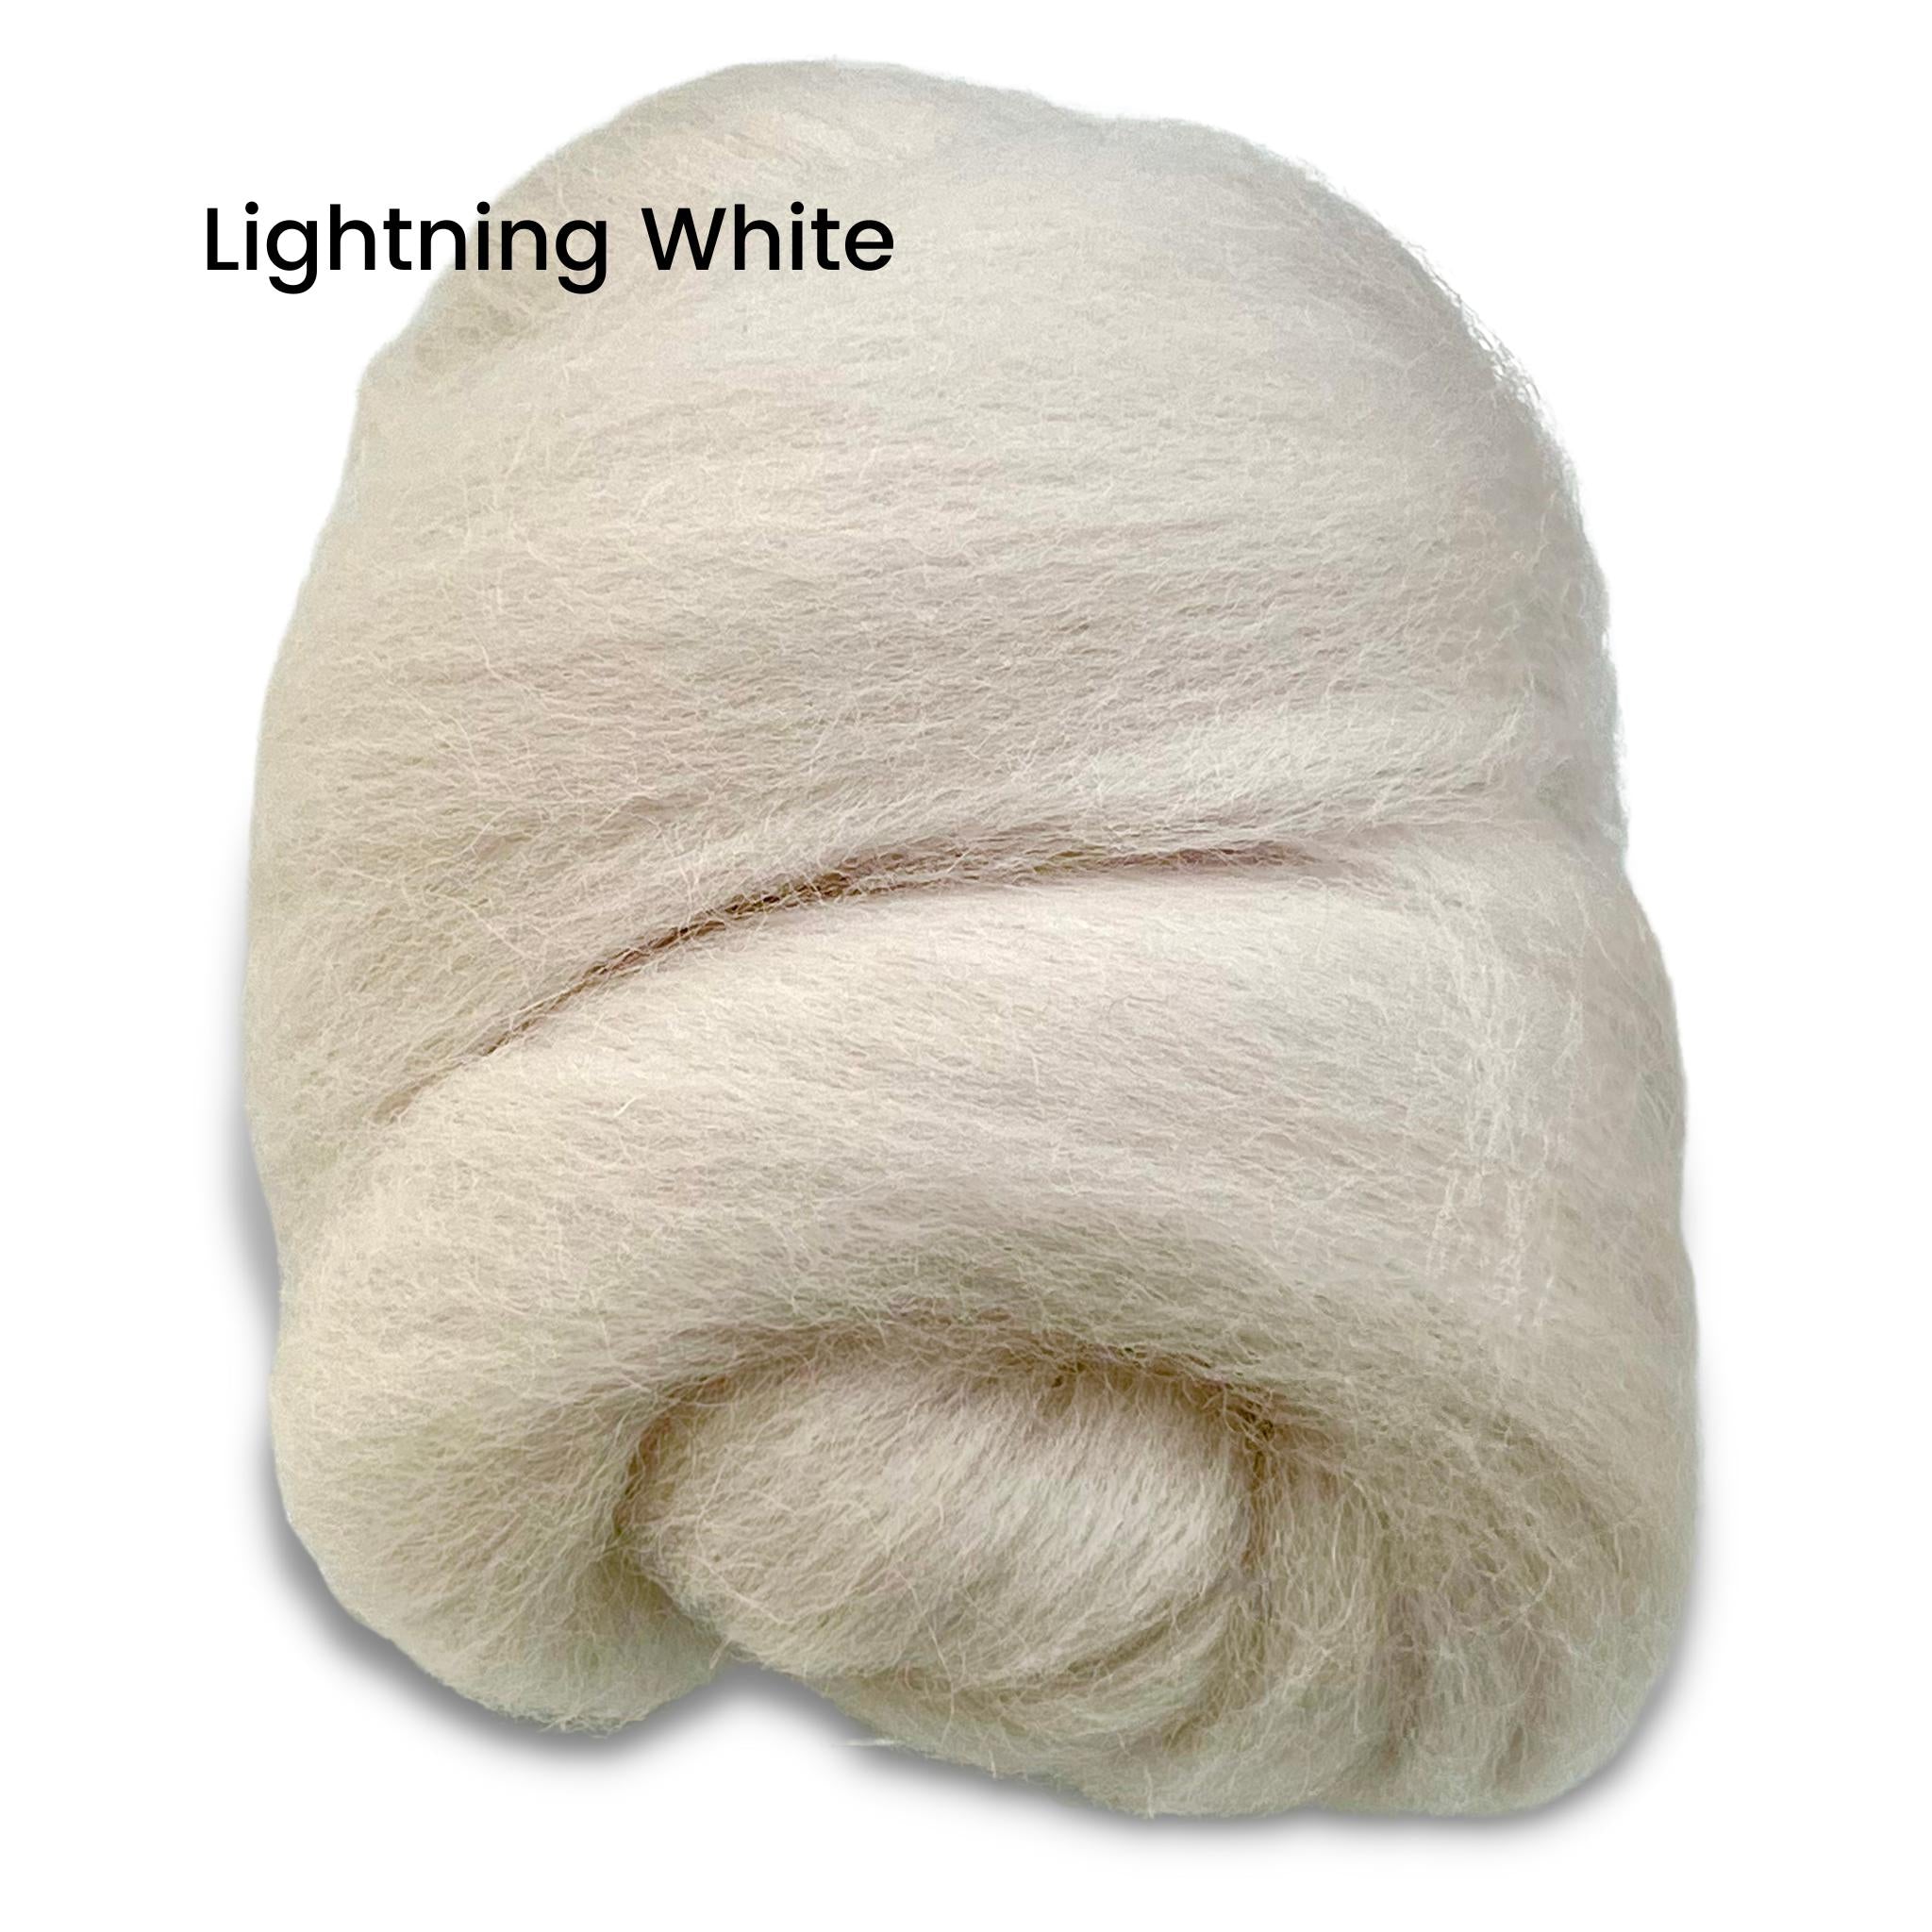 Lightning White Corriedale Wool Roving Top